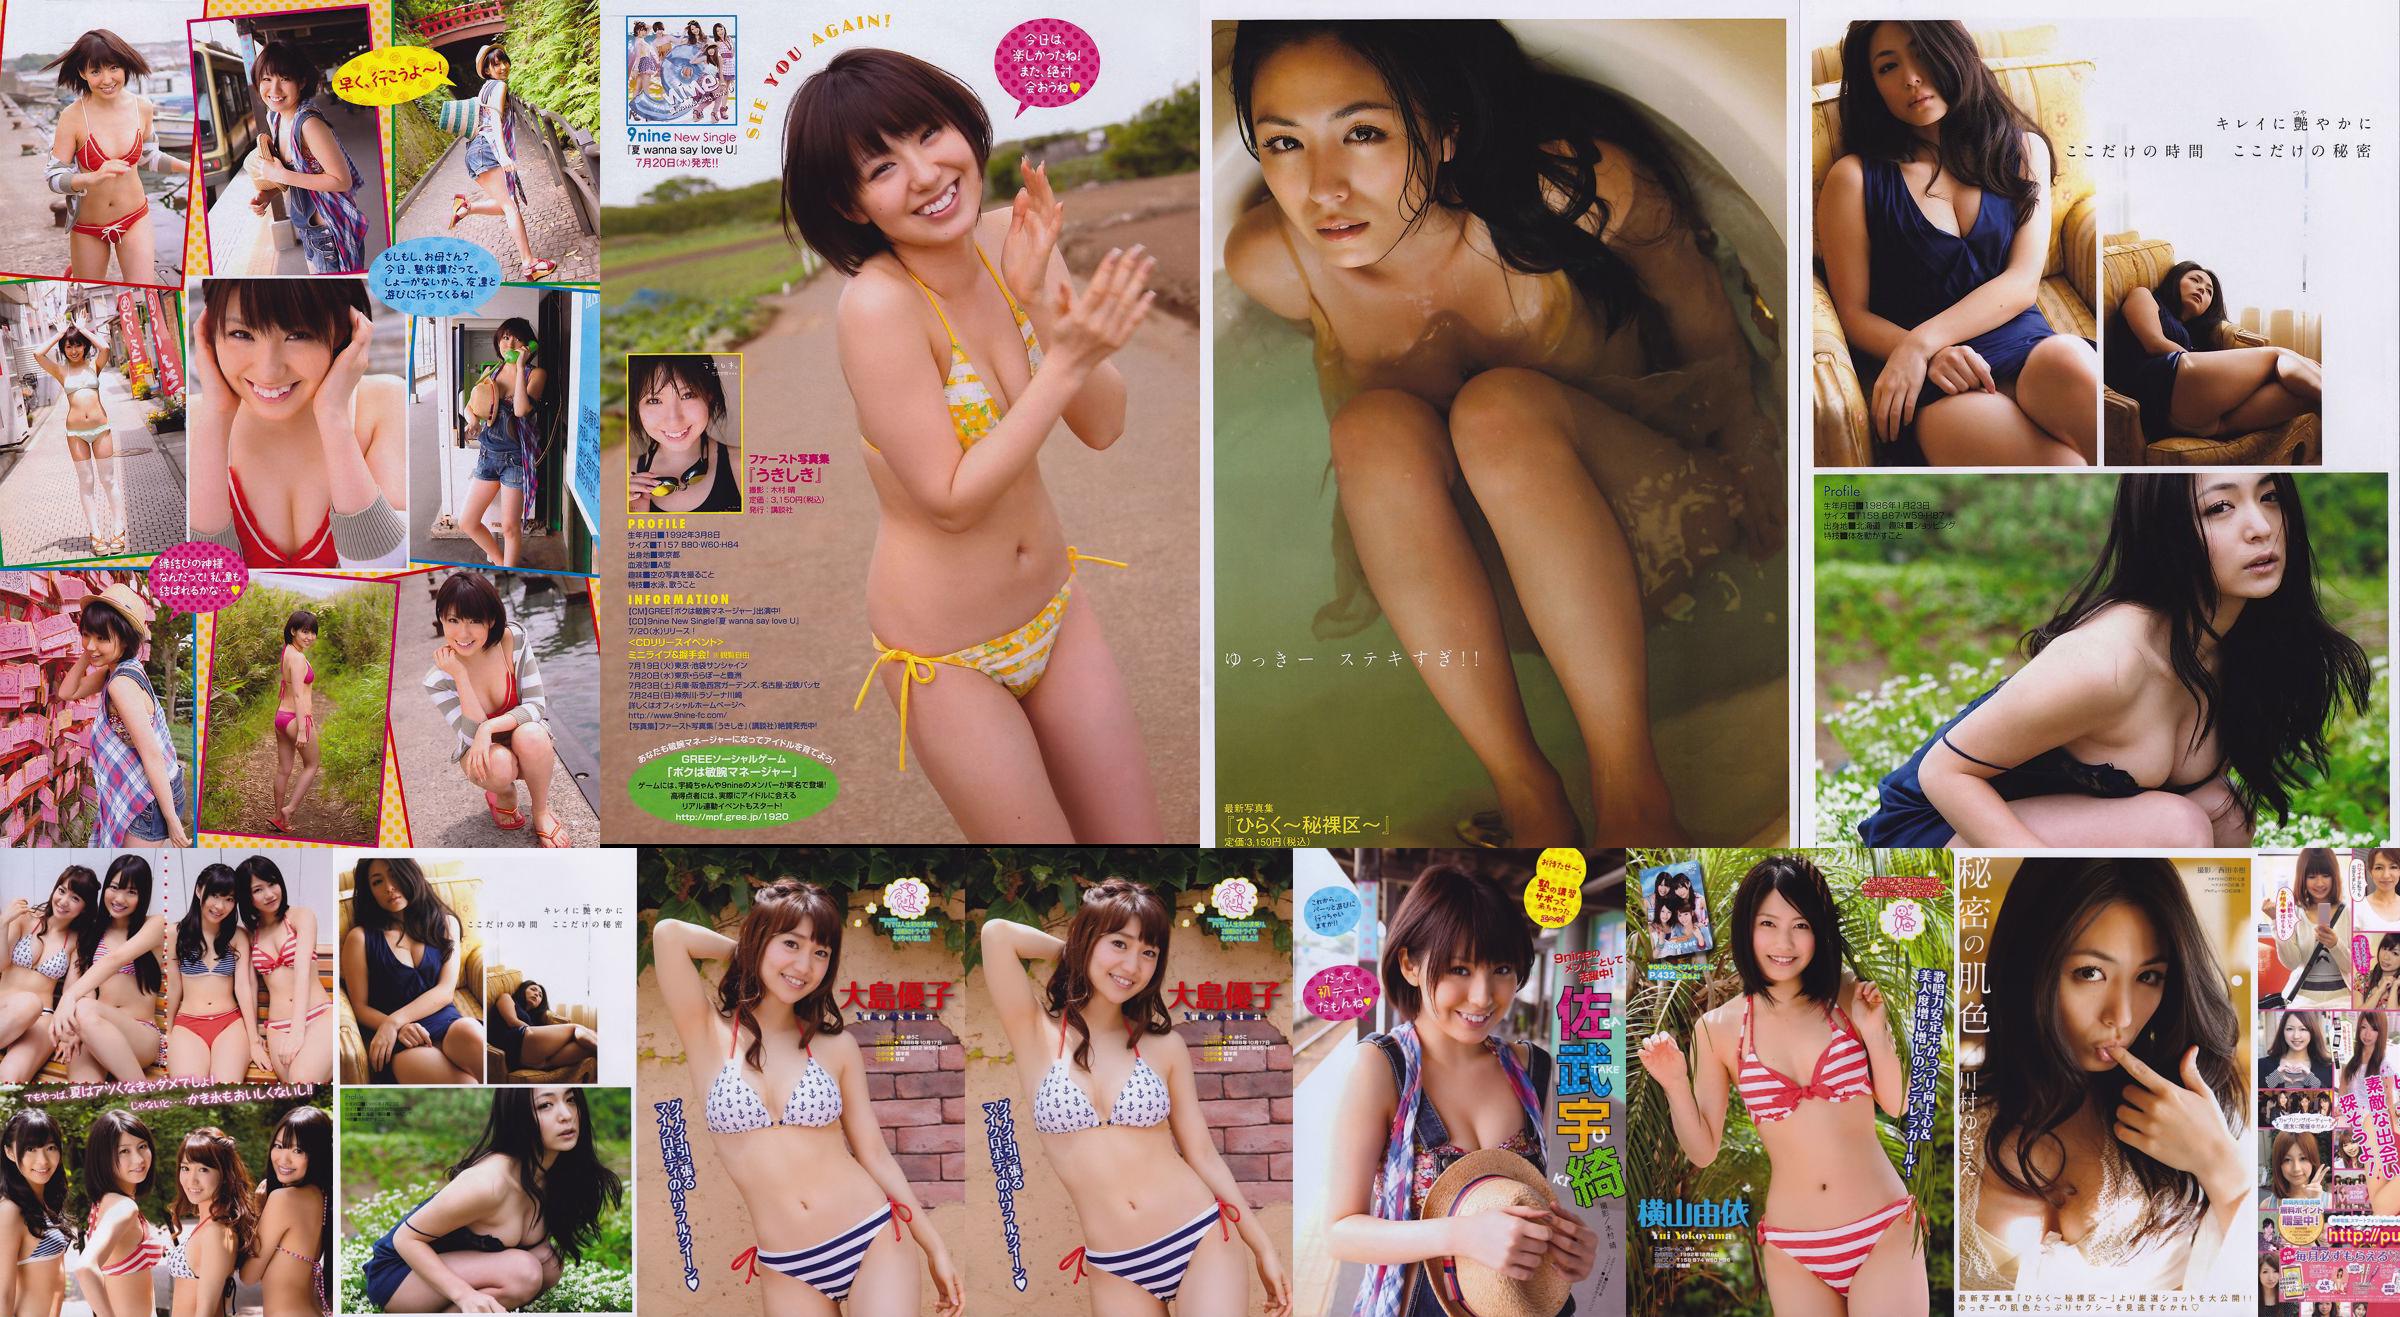 [Revista joven] Todavía no Kawamura ゆ き え Satake Uki 2011 No.32 Photo Magazine No.92a4b4 Página 1